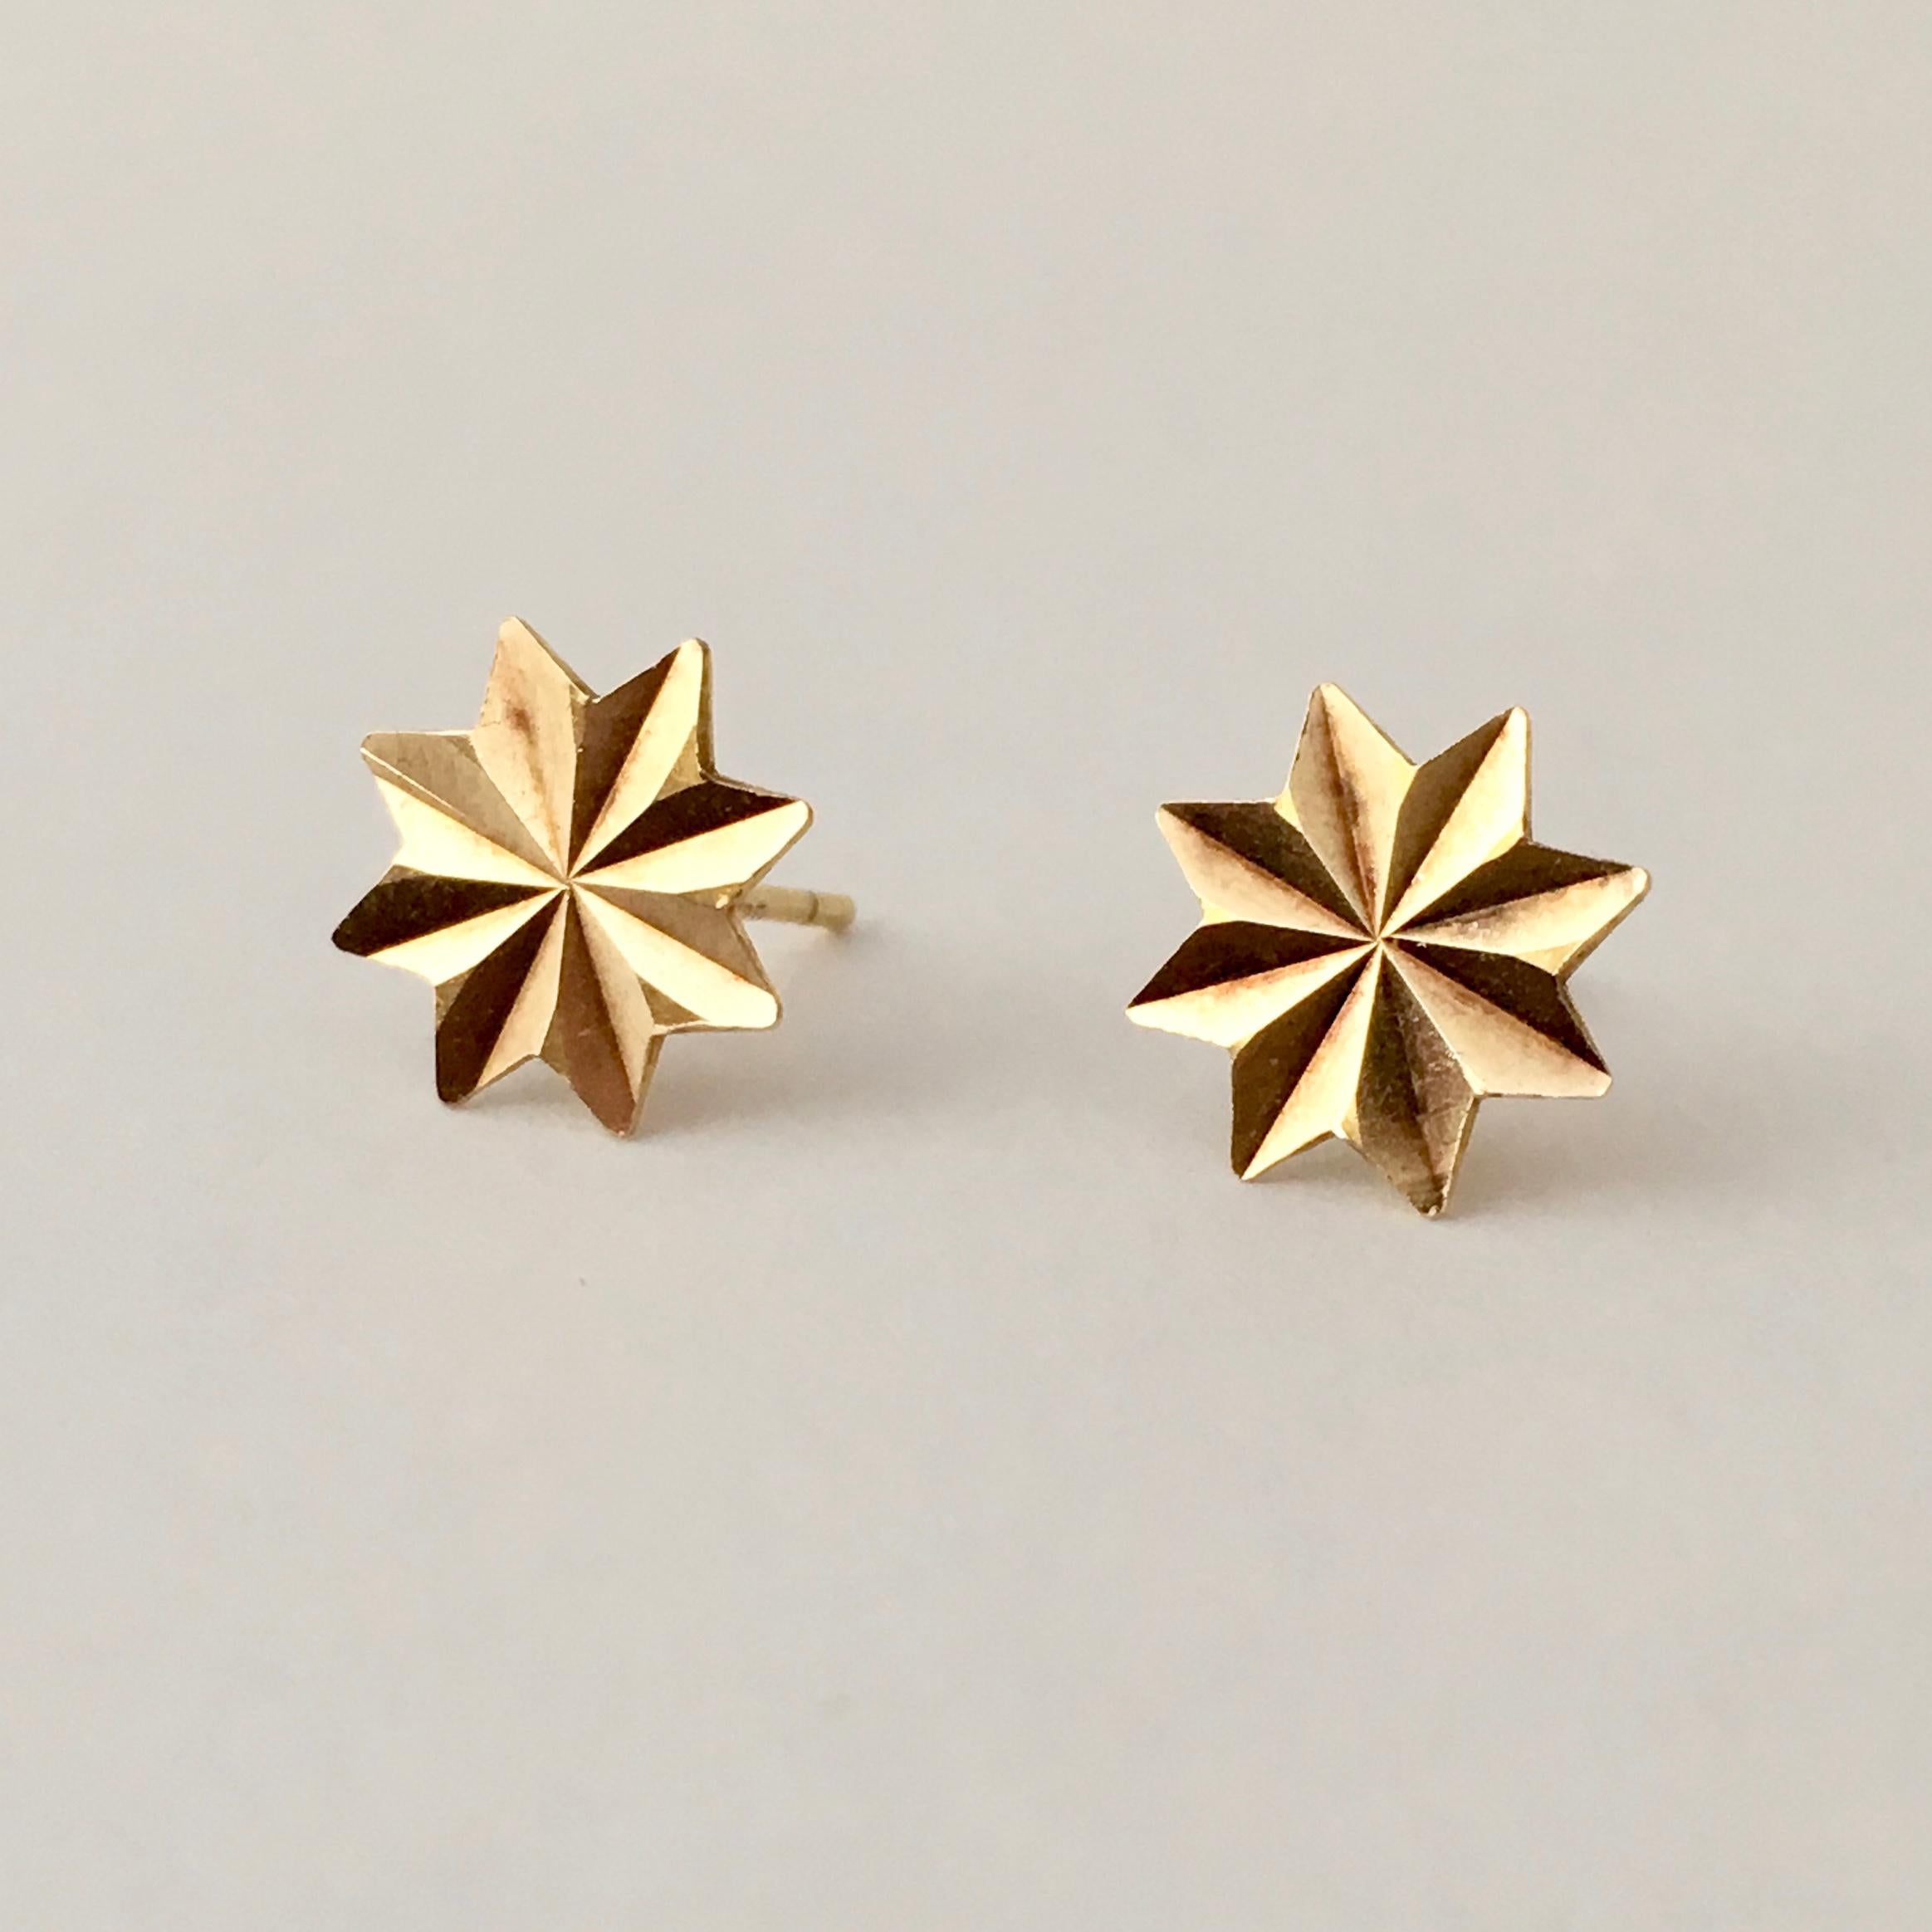 Women's or Men's Gold Star Stud Earrings 1970s Vintage Jewelry Celestial